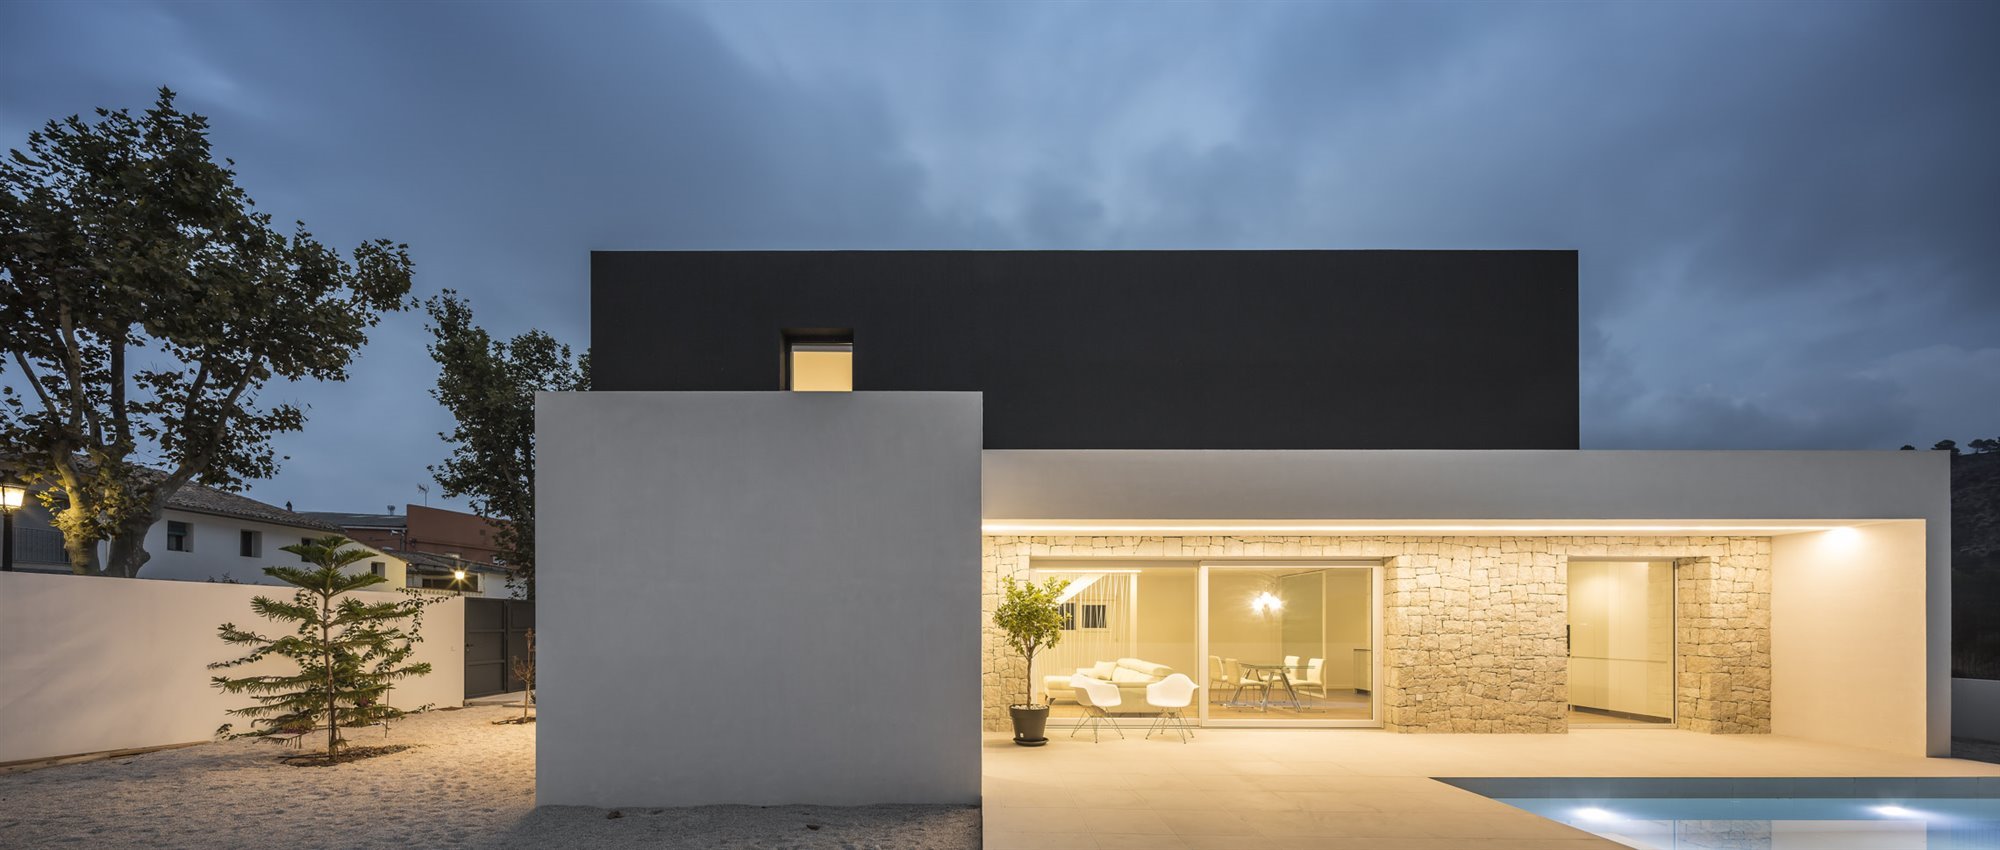 Casa moderna con fachada en blanco y negro en Valencia piscina de noche